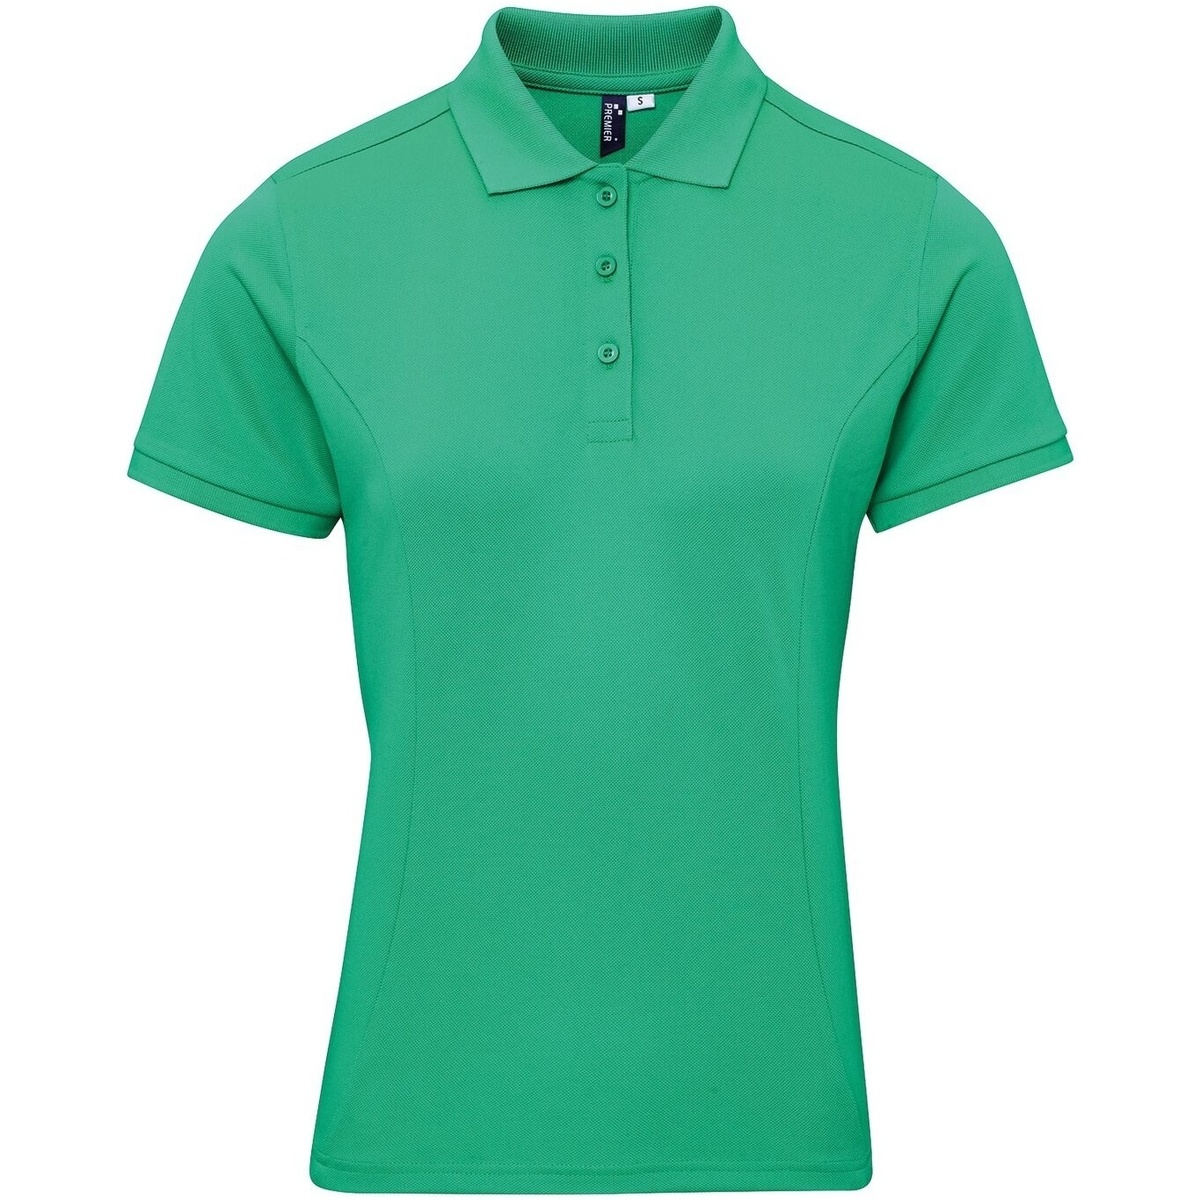 textil Tops y Camisetas Premier Coolchecker Plus Verde